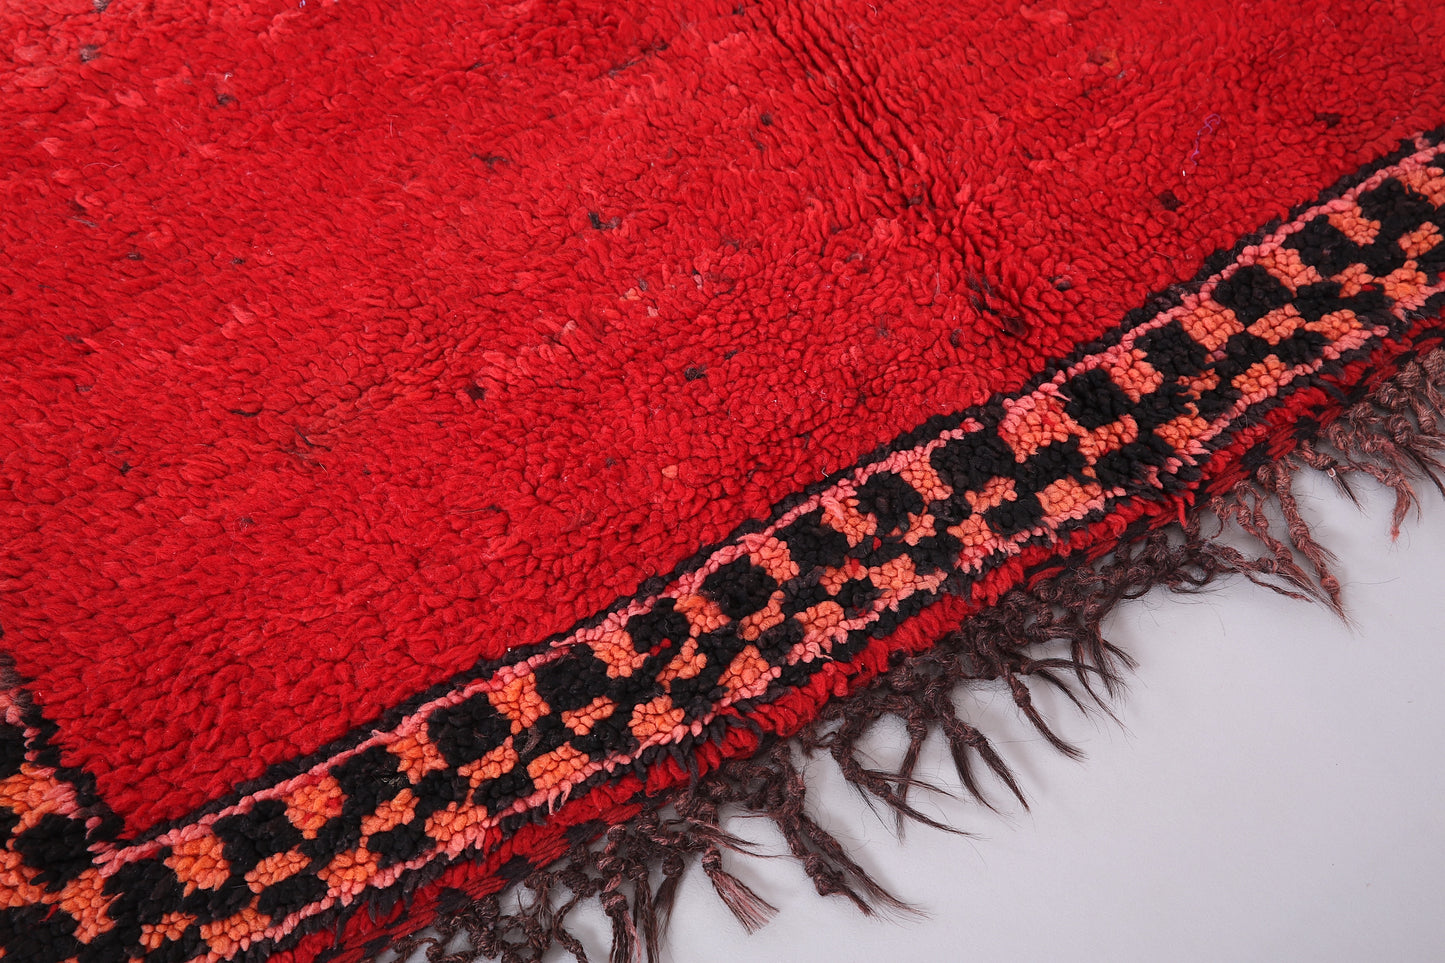 Roter marokkanischer Vintage-Teppich 5,4 FT x 10,2 FT - roter marokkanischer Teppich - Vintage-Tribal-Teppich - handgemachter Berberteppich - einzigartiger Vintage-Teppich - Boho-Teppich